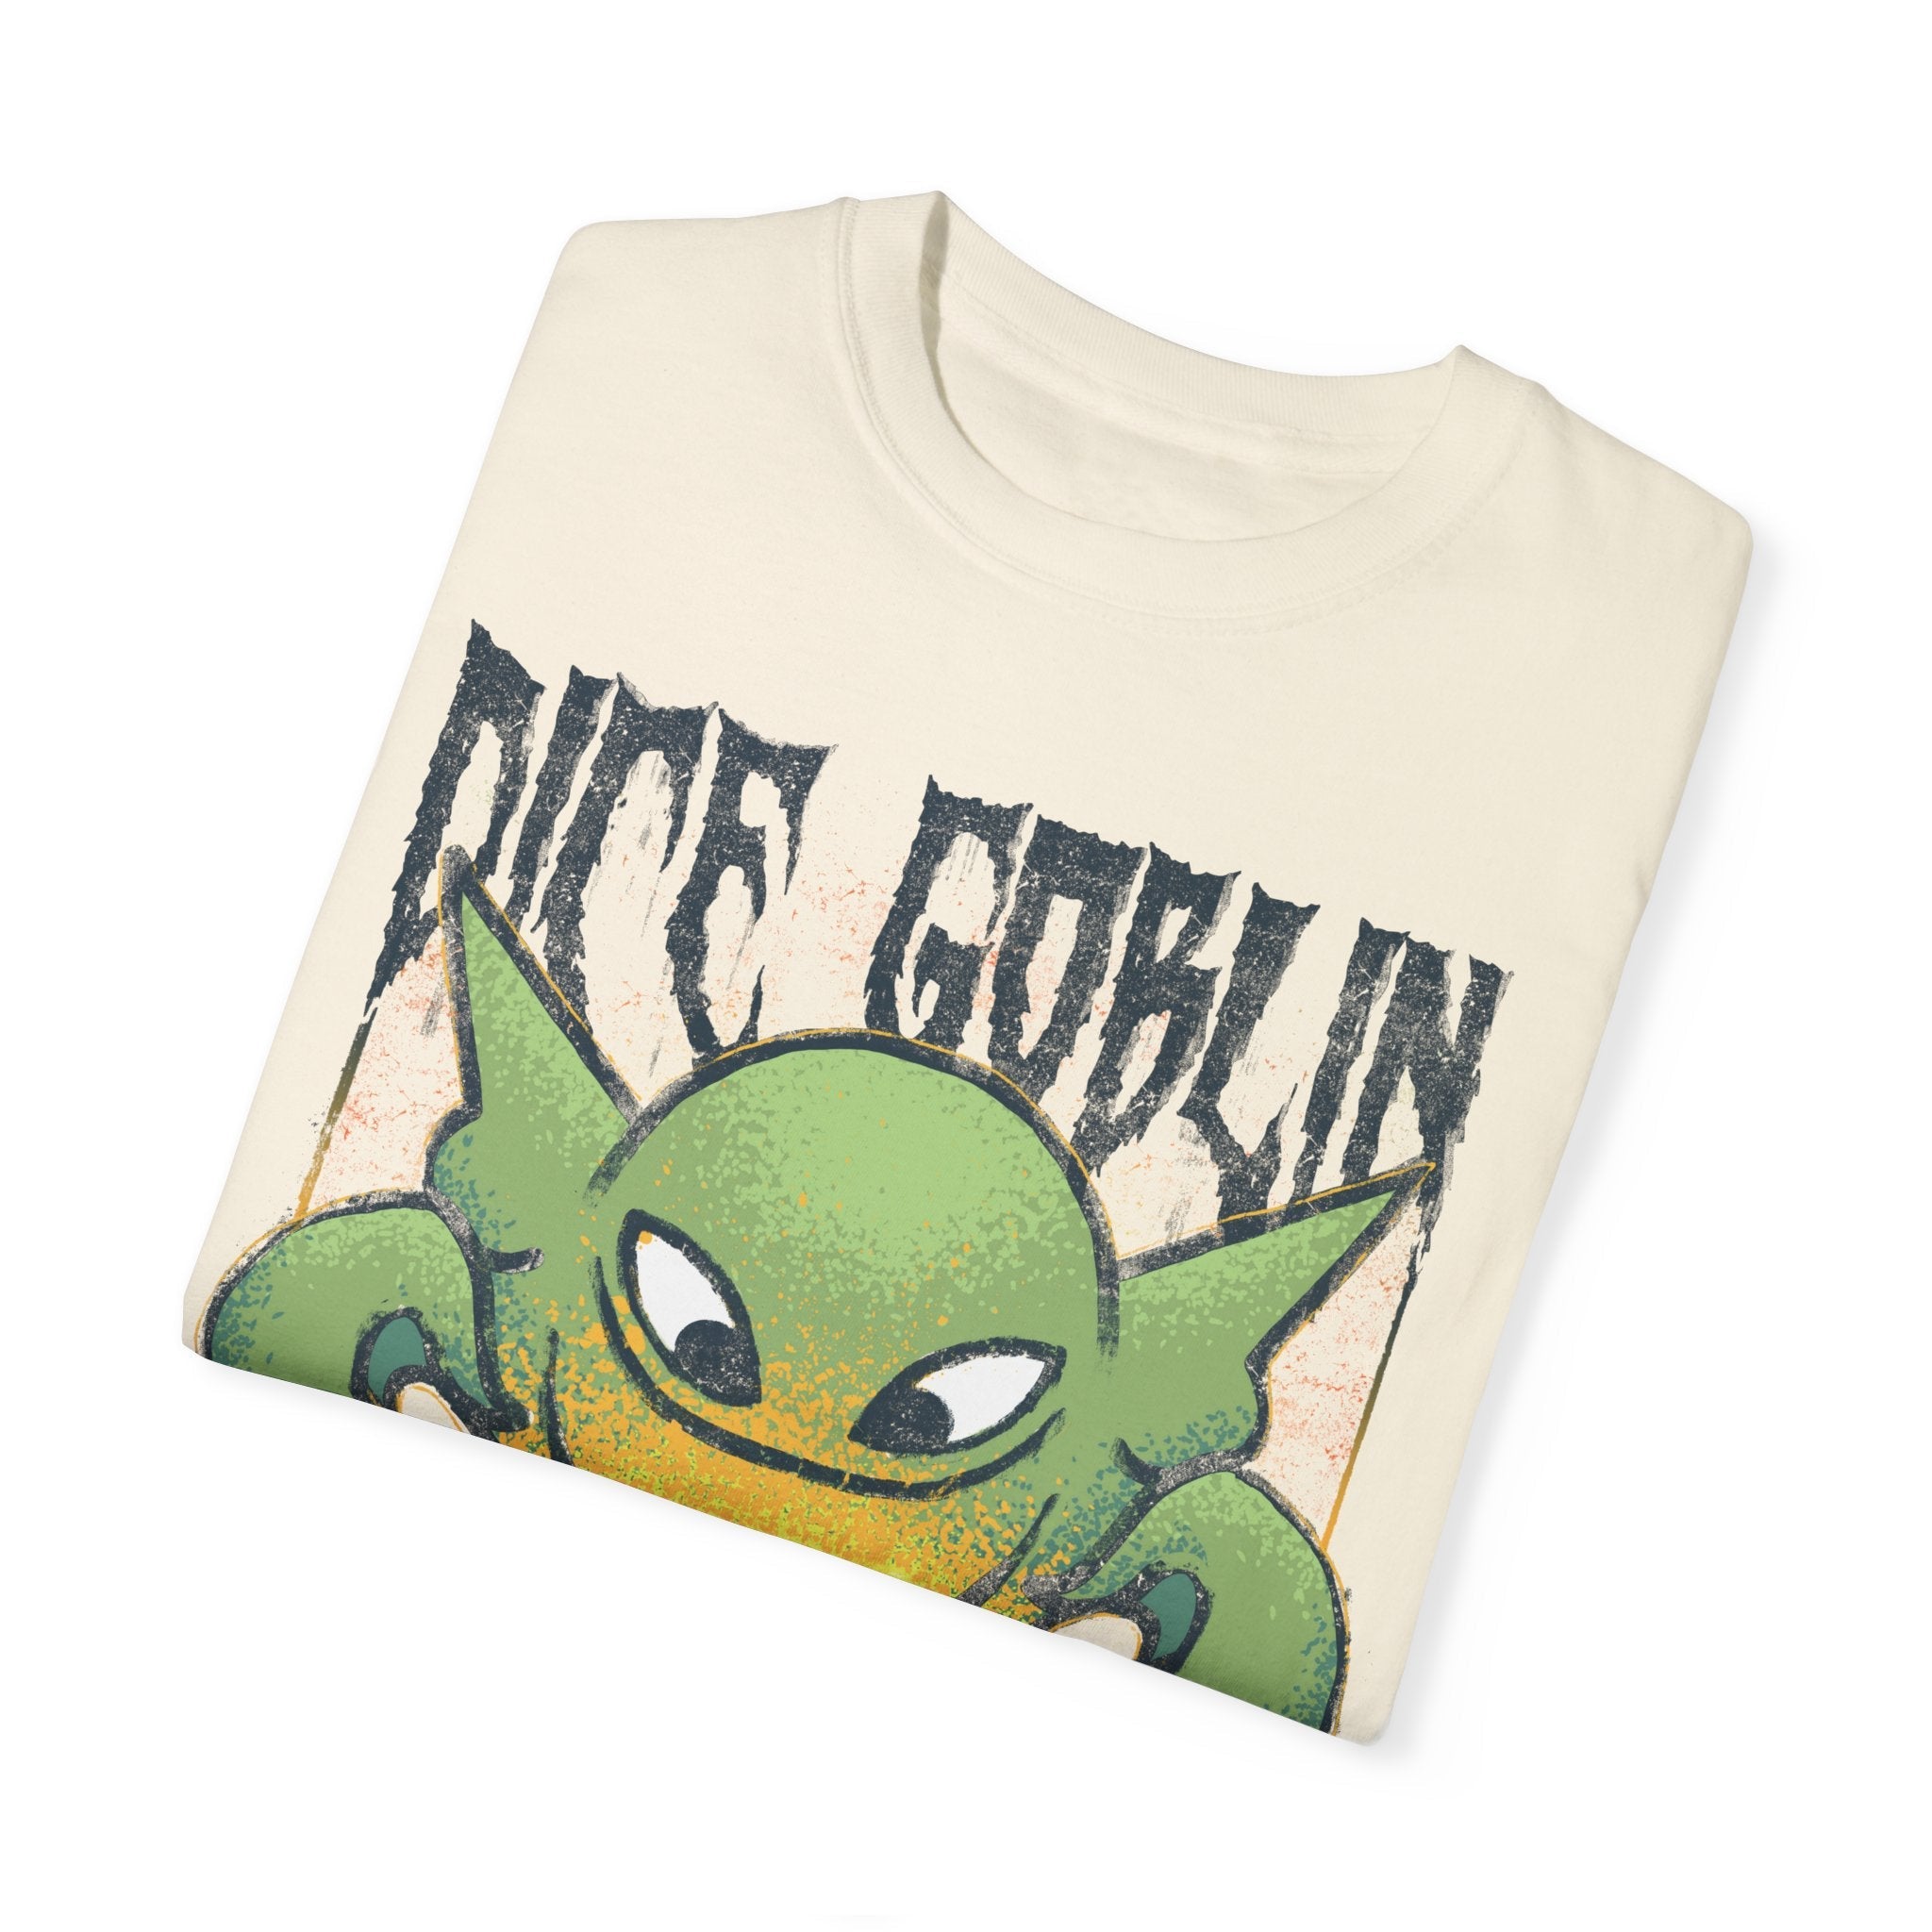 Dice Goblin | Metal | Comfort Colors Premium T-Shirt - T-Shirt - Ace of Gnomes - 16413499372981325538